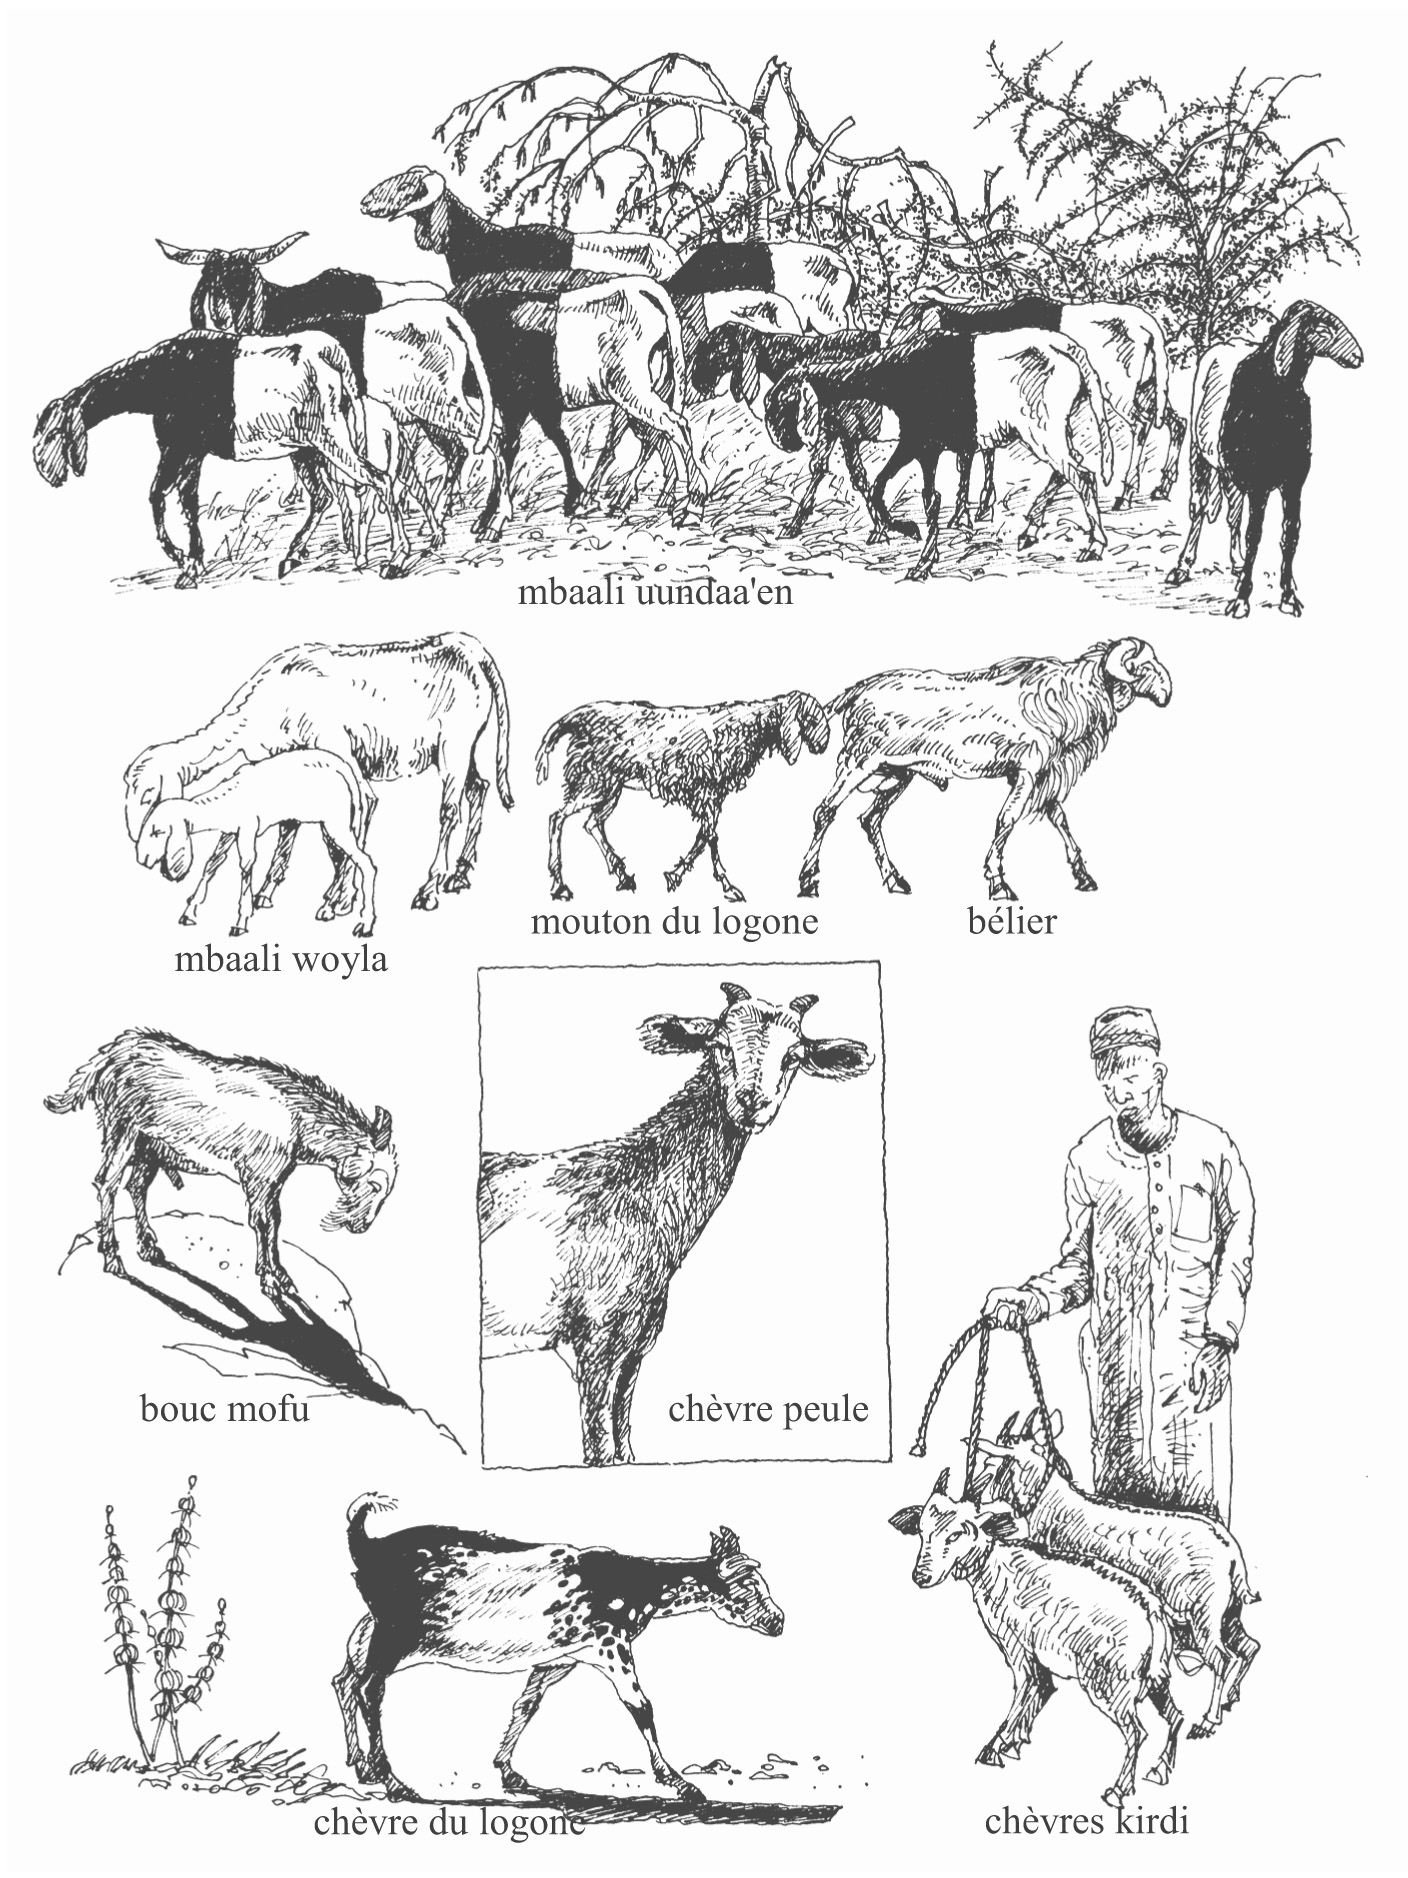 Chèvre Animal De La Terre, Mouton Animal De L&amp;#039;eau Nord Cameroun intérieur Différence Entre Brebis Et Mouton 